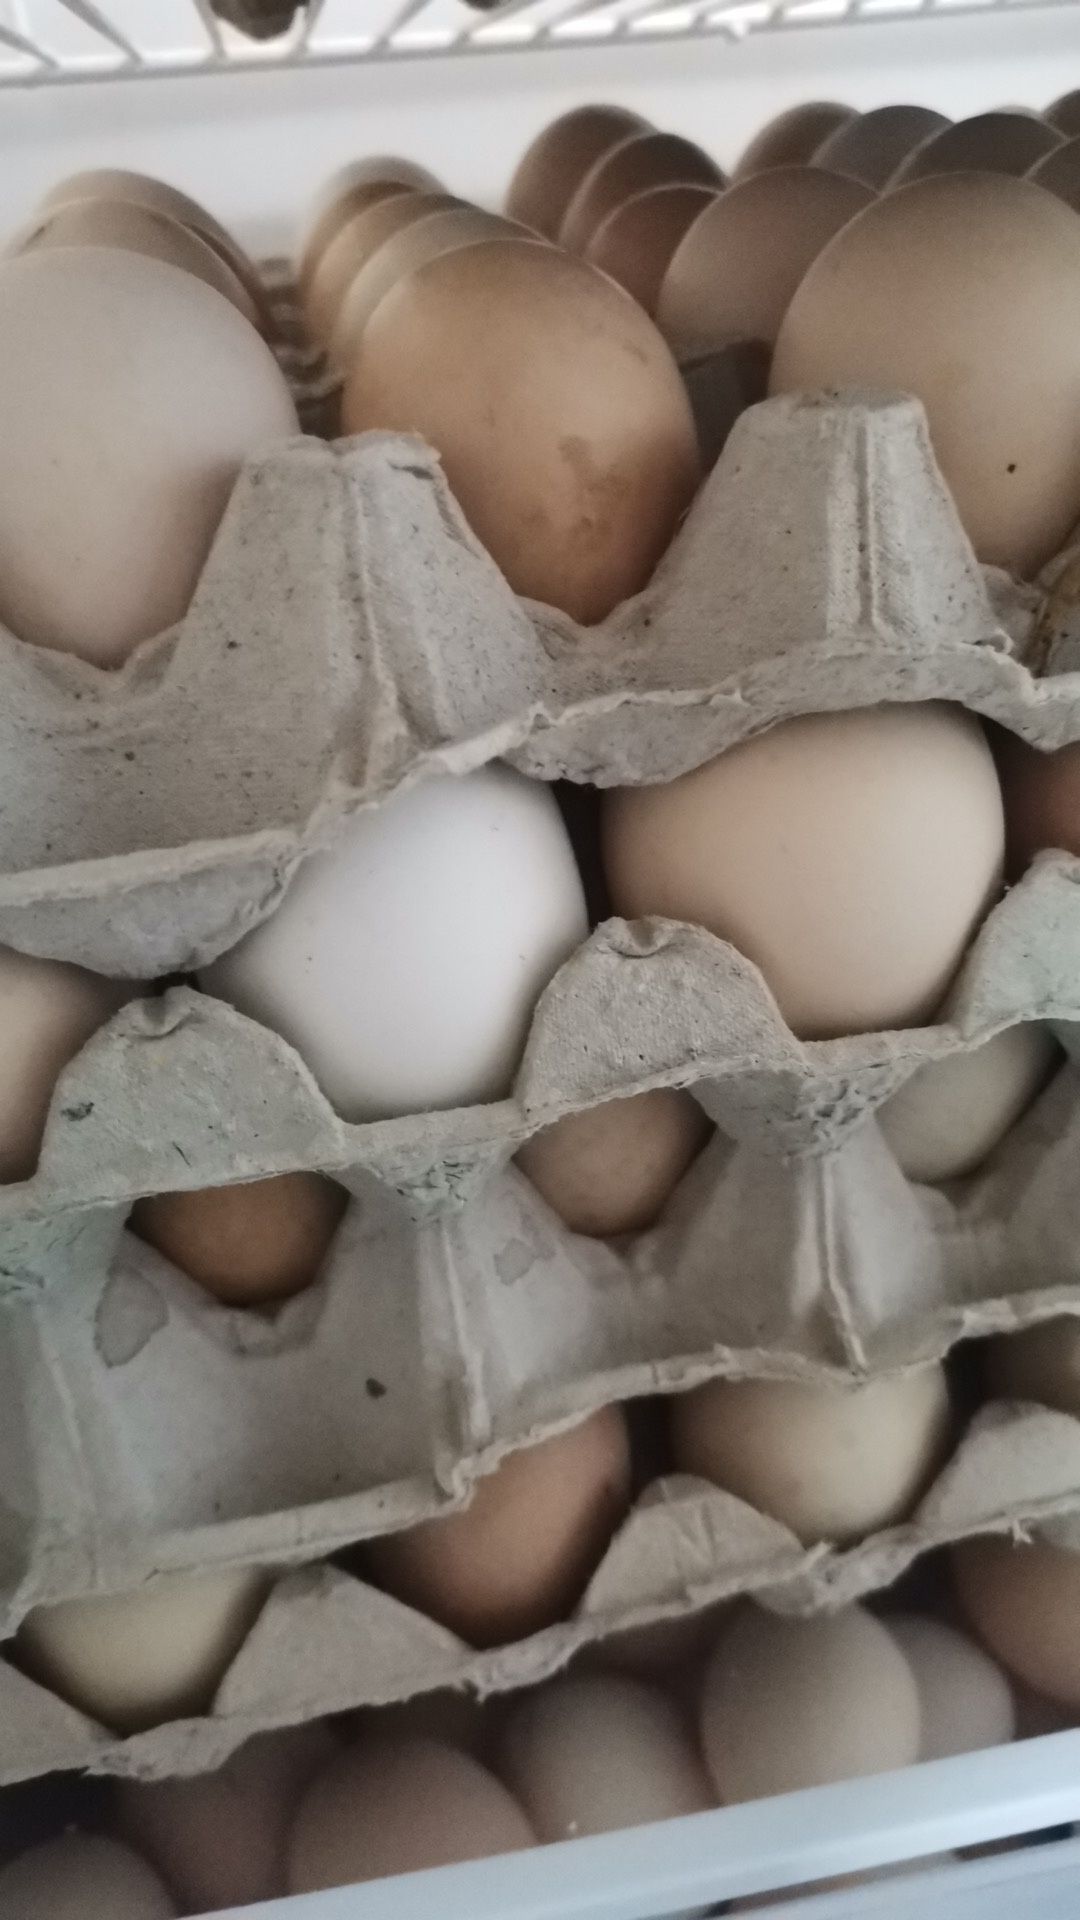 Ouă de găini pt incubat sau consum